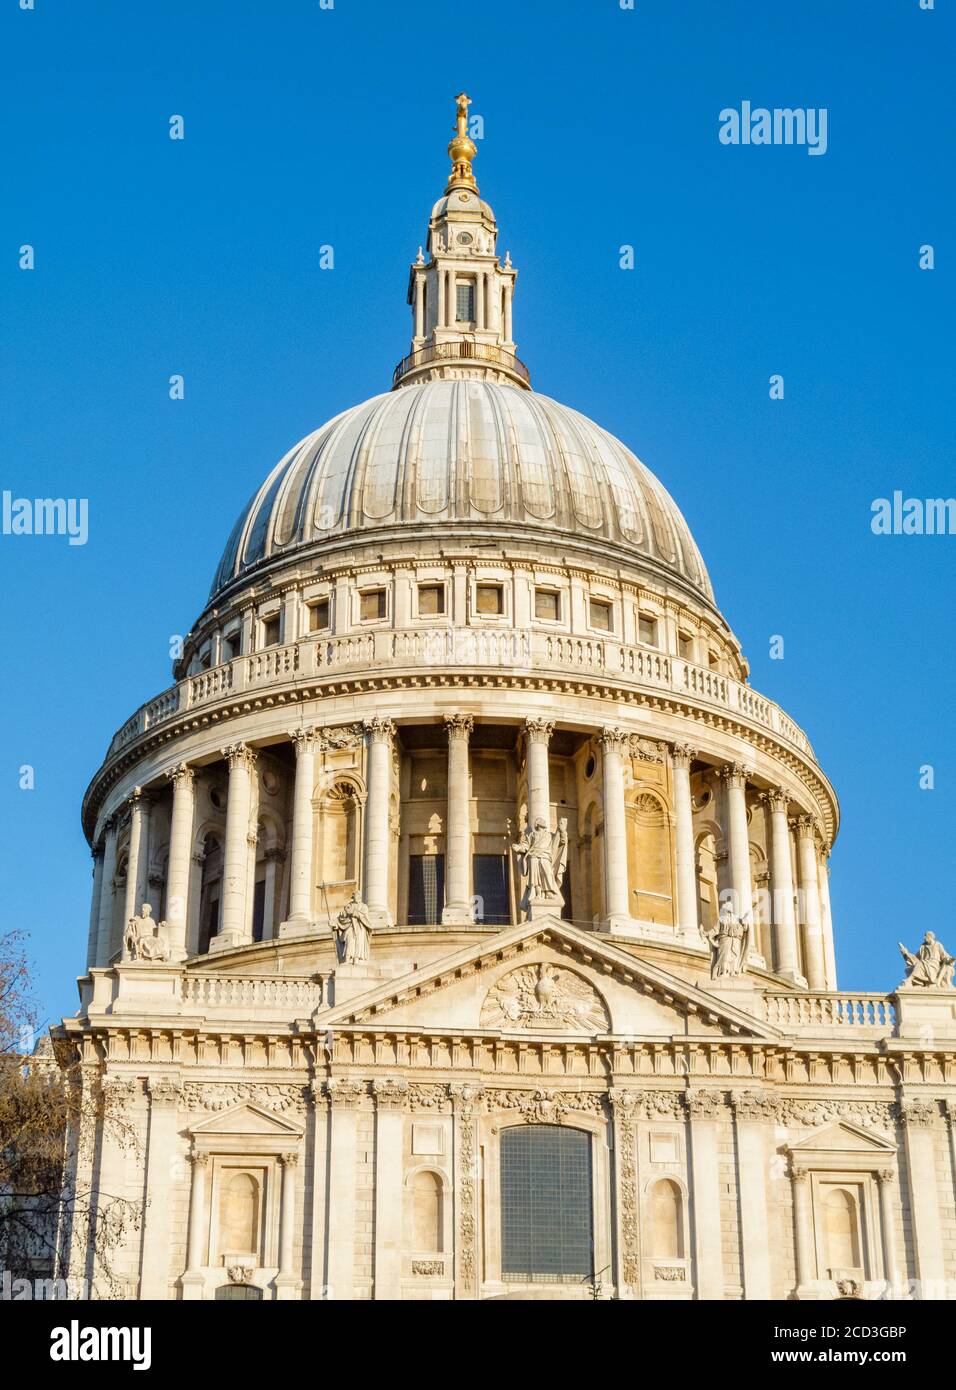 Dettagli architettonici dell'iconico monumento londinese, la cupola della Cattedrale di San Paolo, vista dal lato sud con il cielo blu in una soleggiata giornata invernale Foto Stock